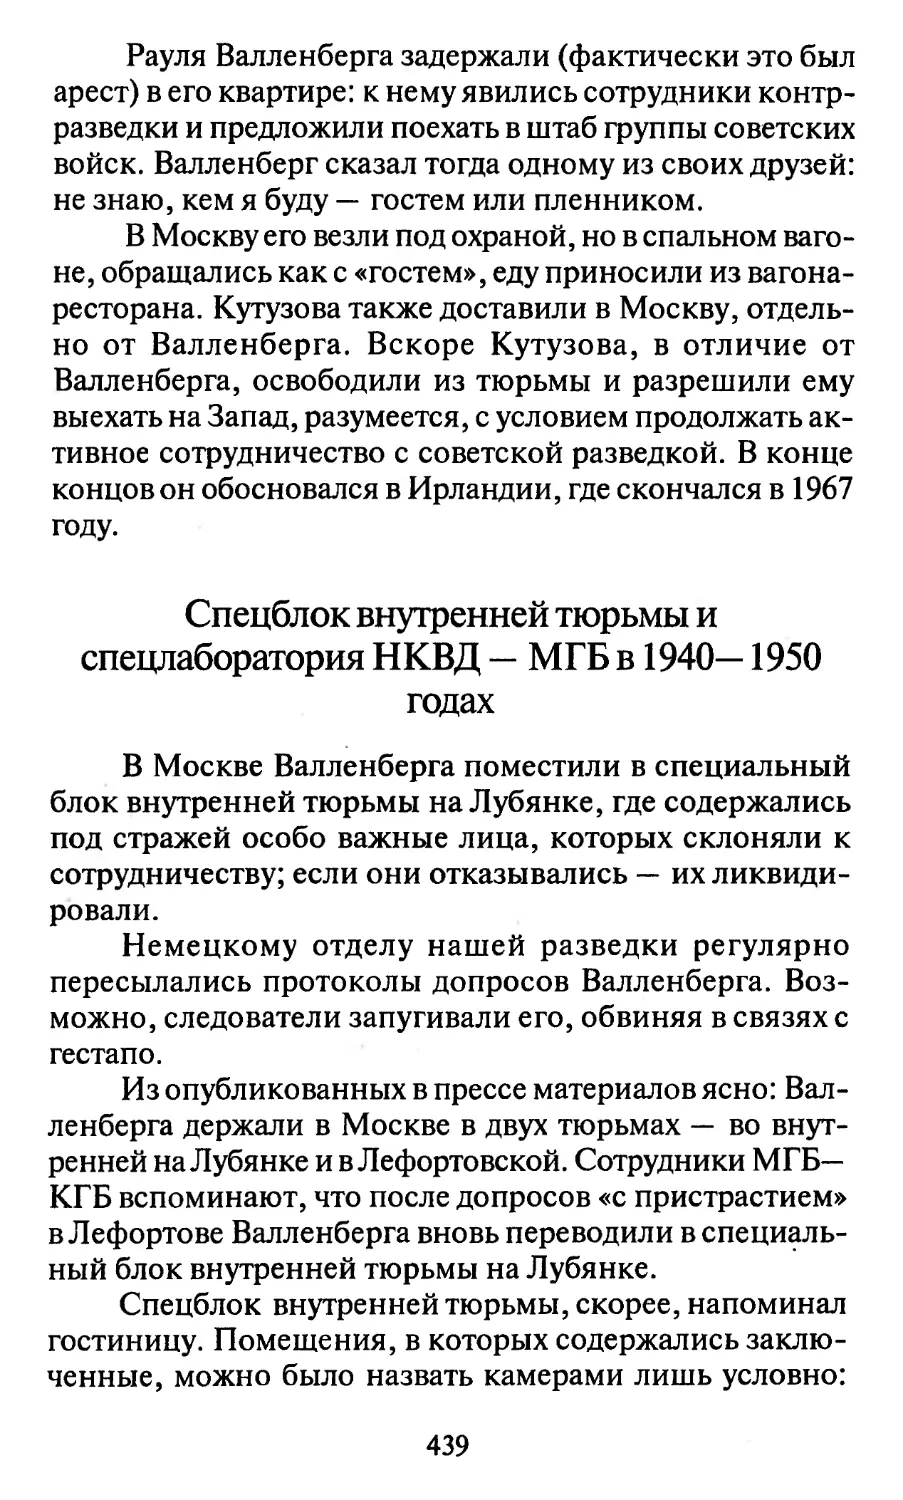 Спецблок внутренней тюрьмы и спецлаборатория НКВД — МГБ в 1940-1950 годах